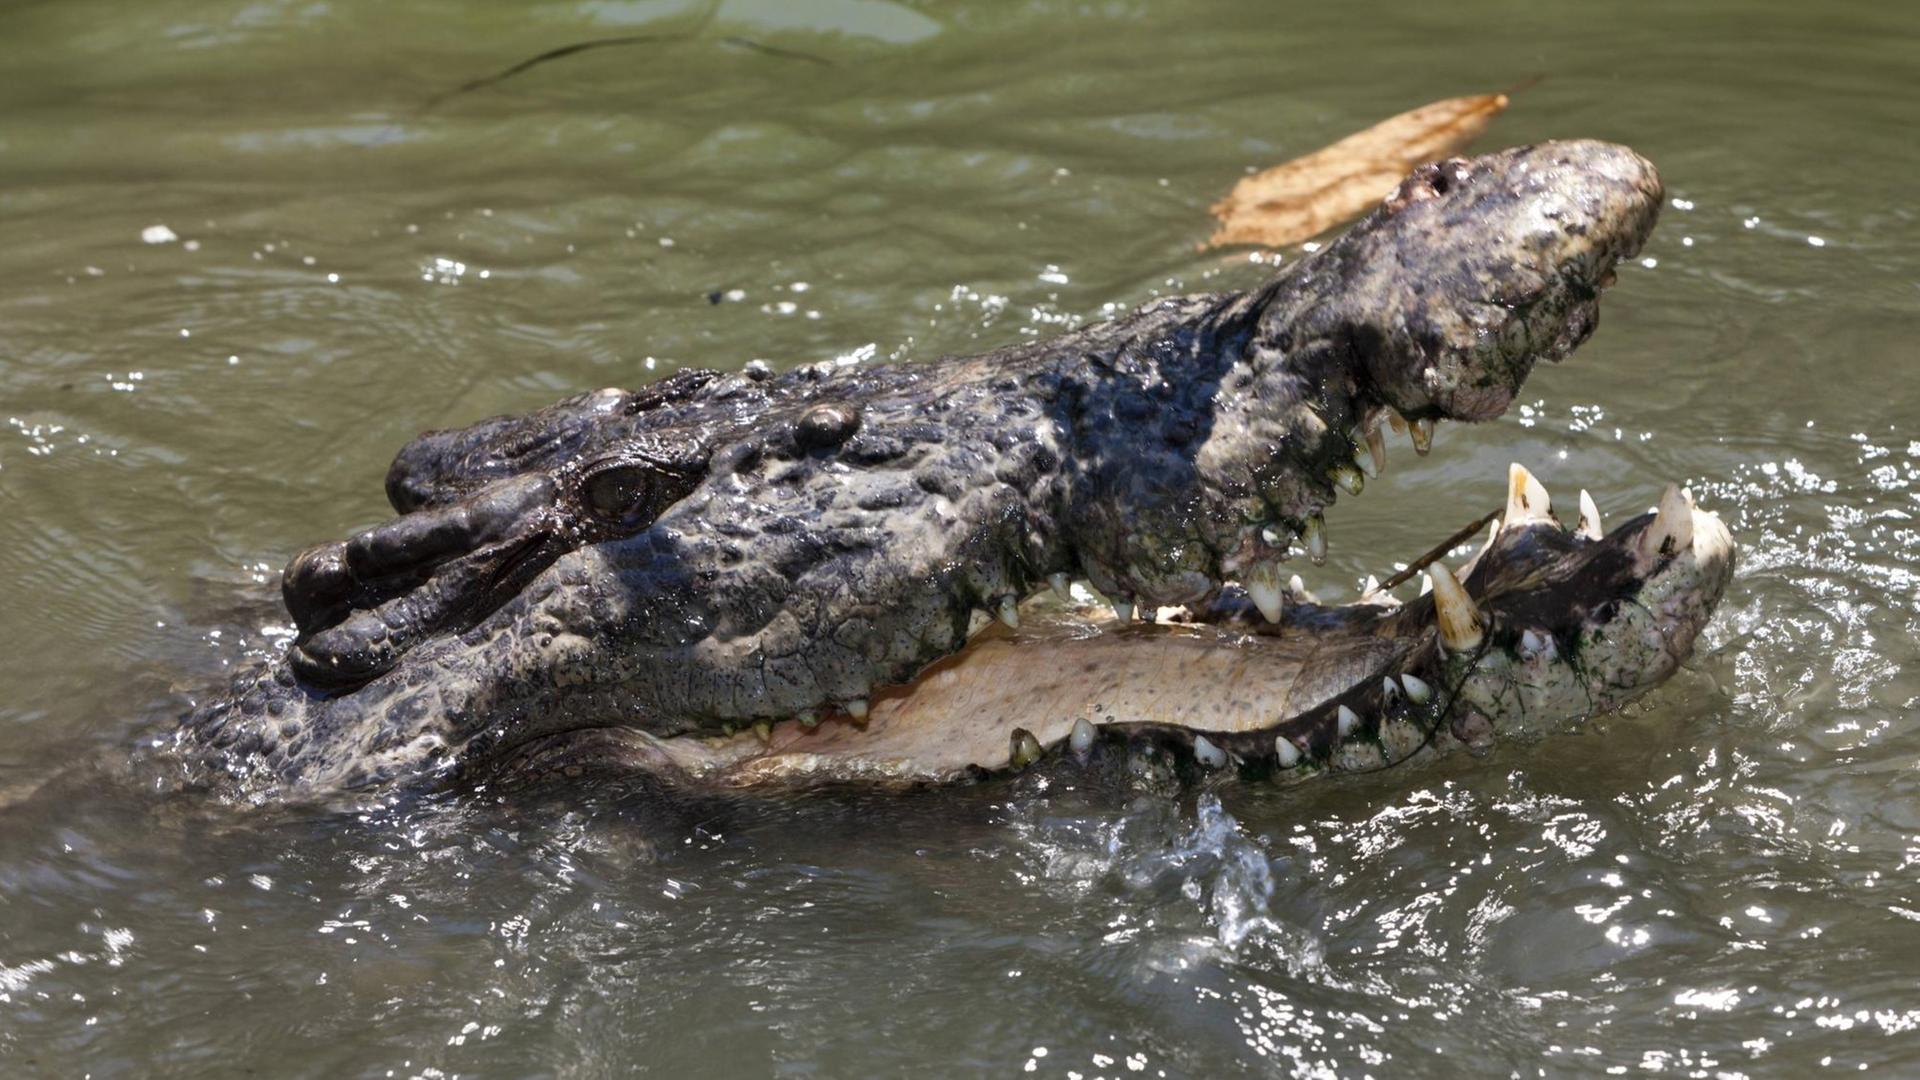 Ein Krokodil schaut mit seinem Kopf aus dem Wasser und reißt das Maul auf.